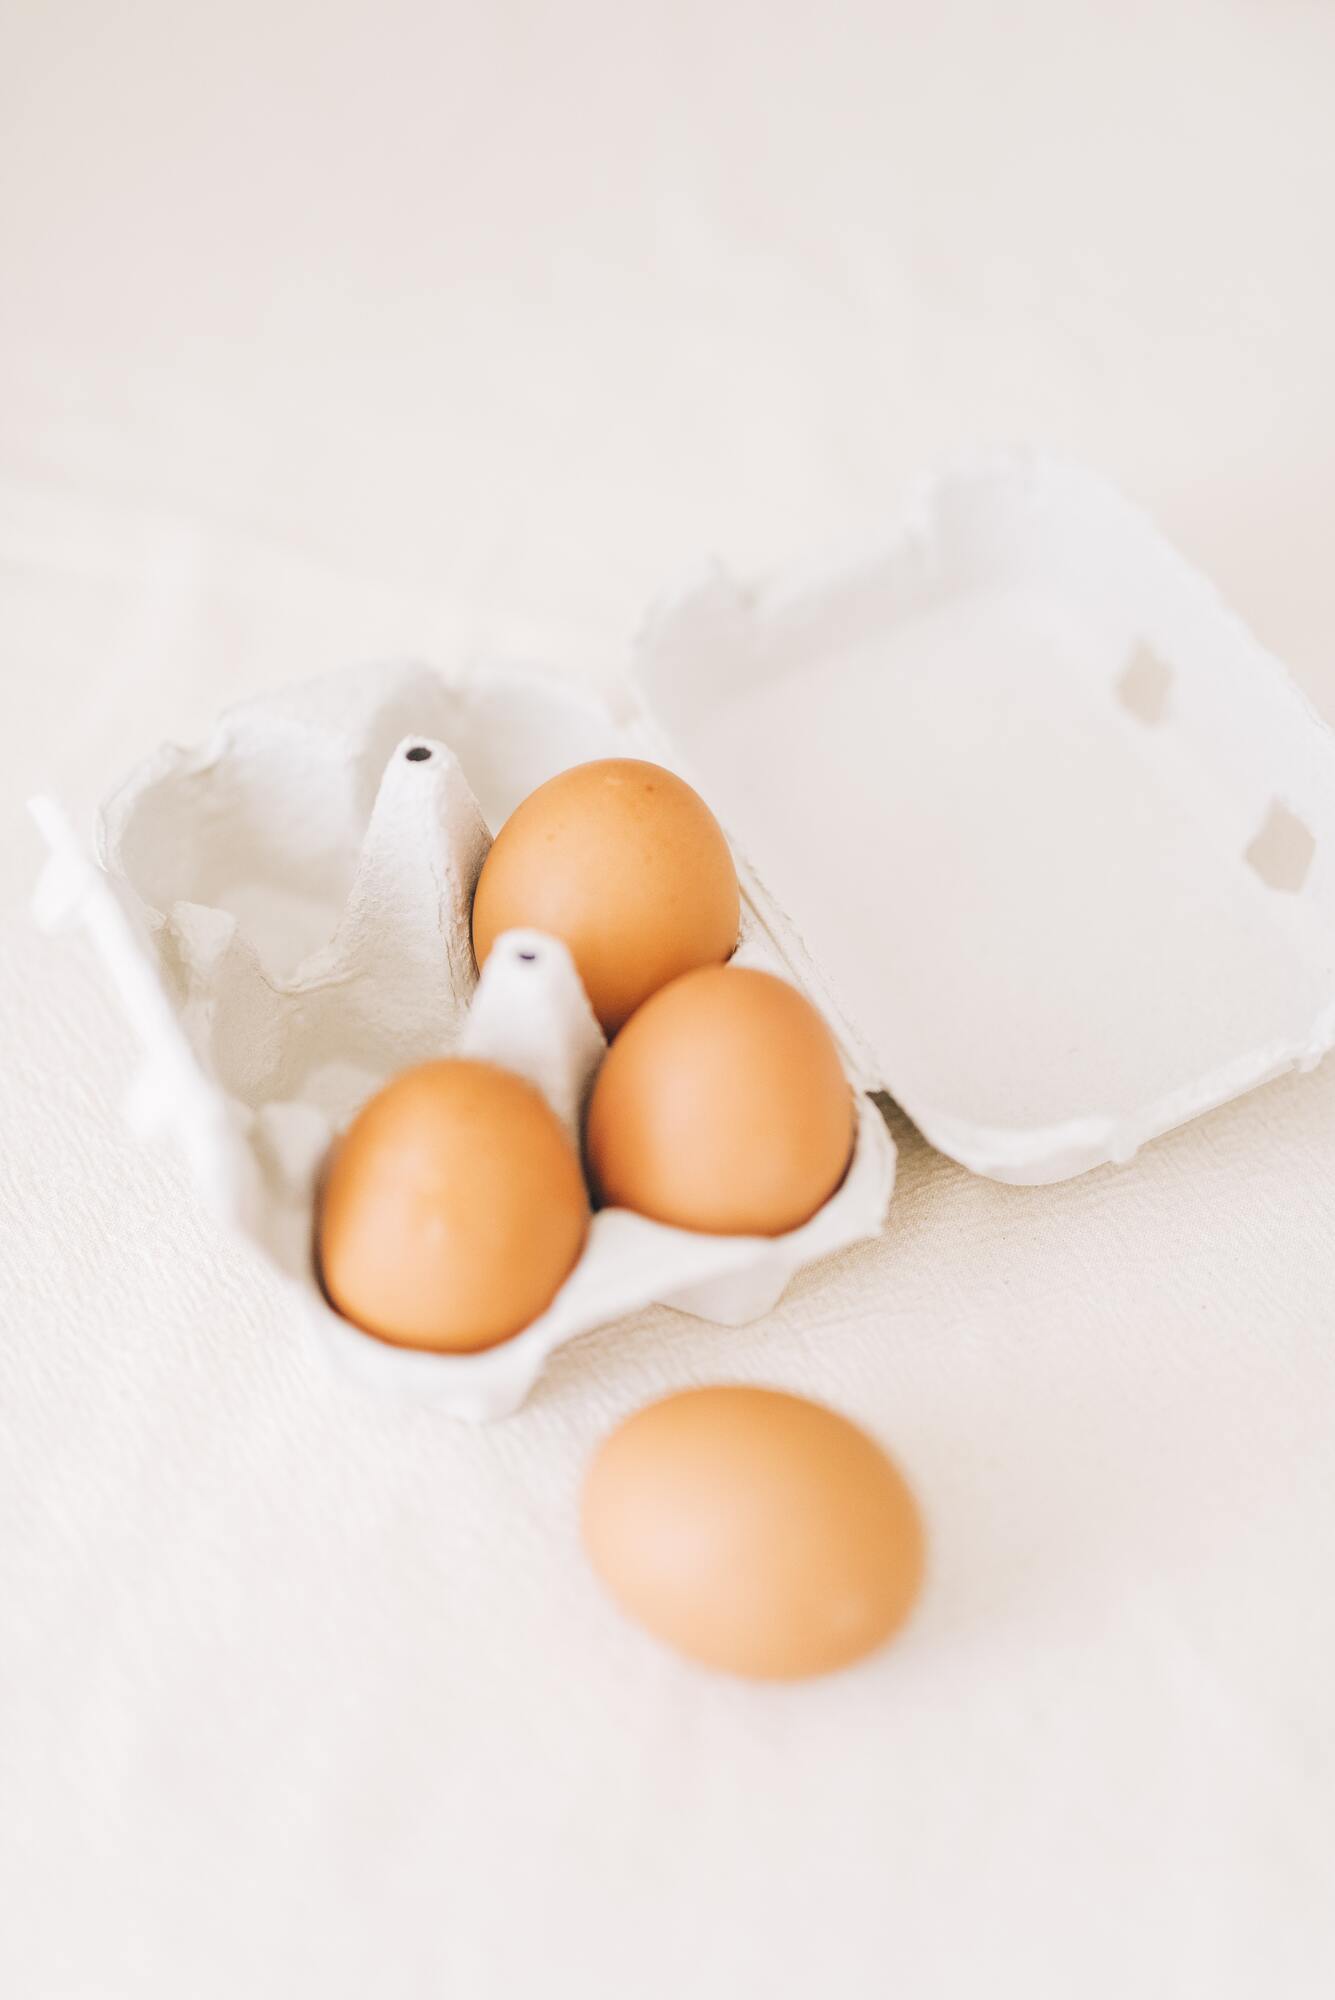 Jak długo można przechowywać jajka bez chłodzenia?